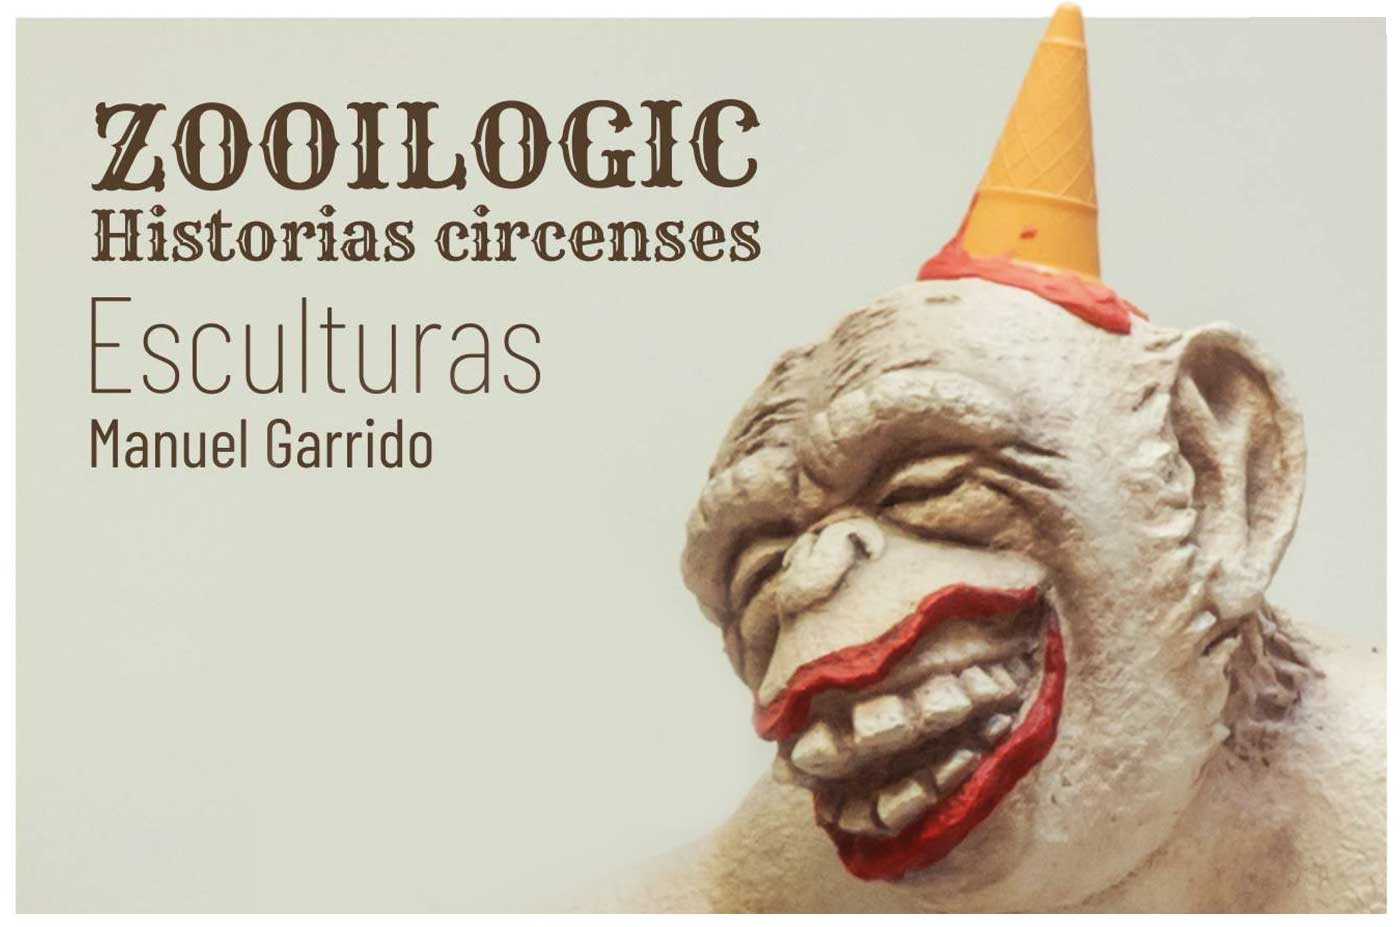 Exposicion Manolo Garrido historias cirquenses escuturas